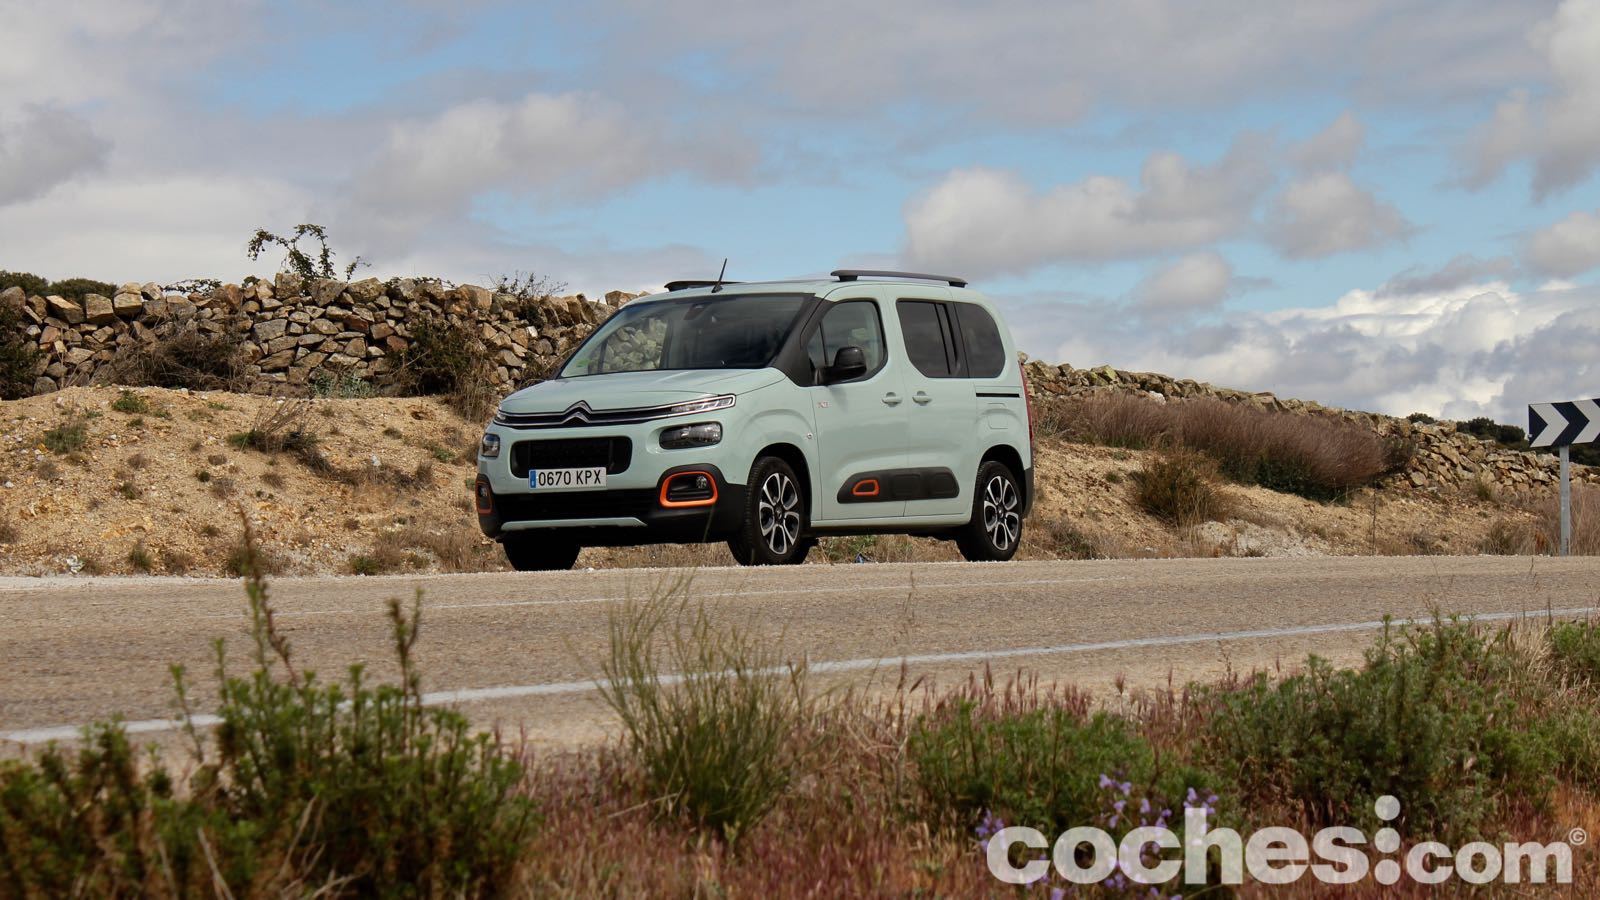 Probamos el Citroën Berlingo de 130 CV gasolina. ¿Cómo se comporta?